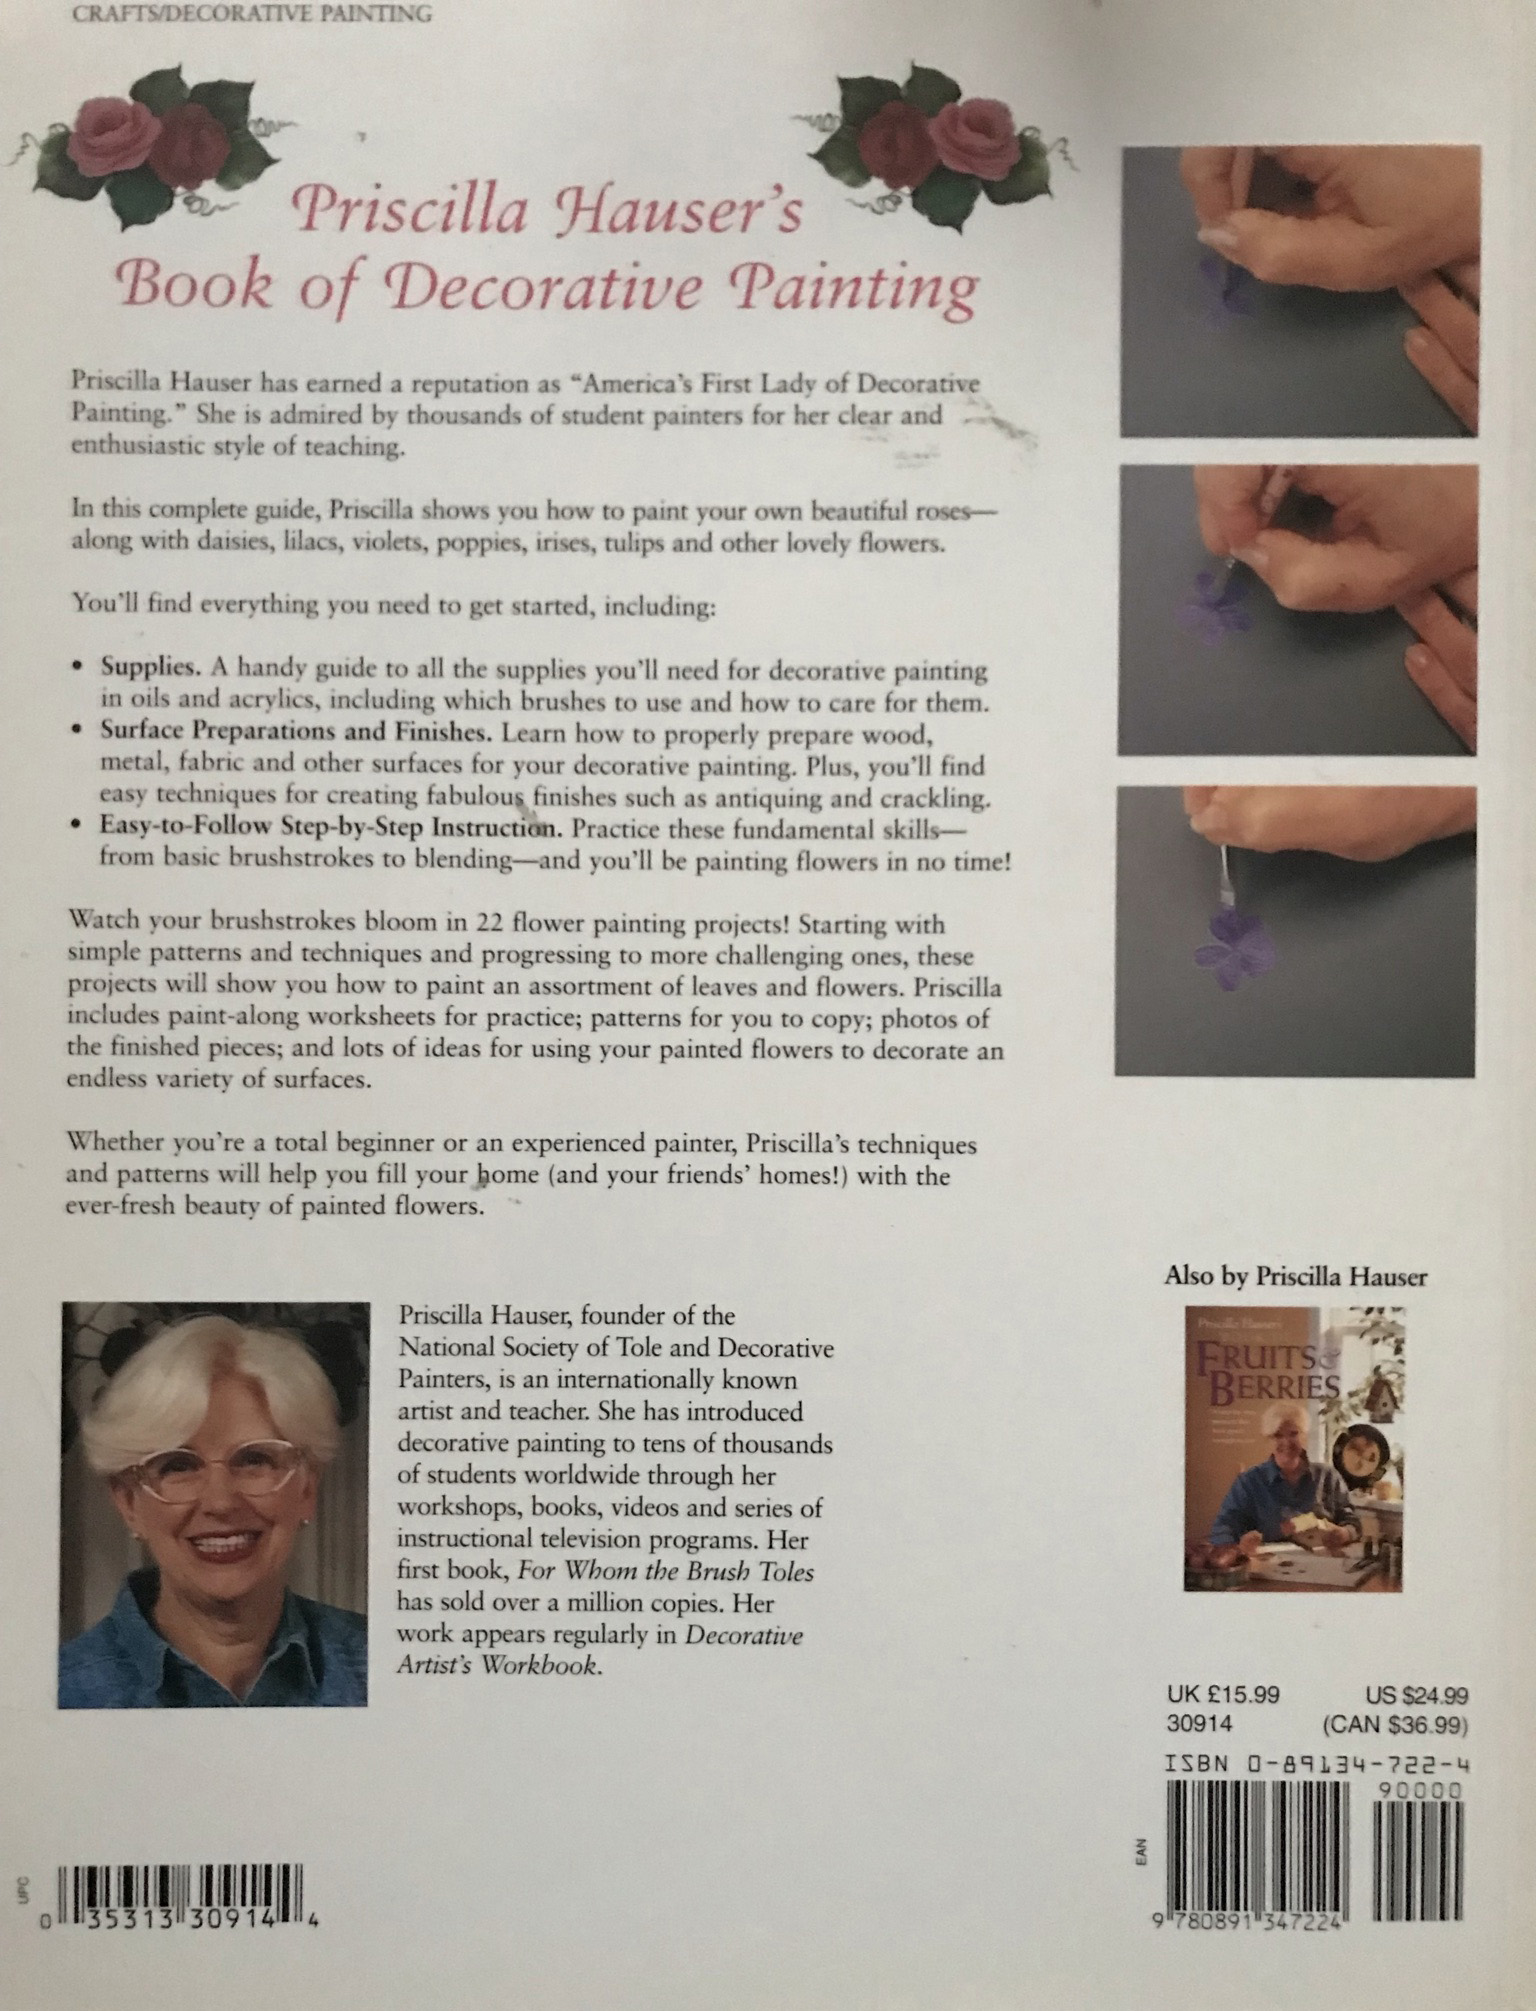 Book of decorative painting - Priscilla Hauser2